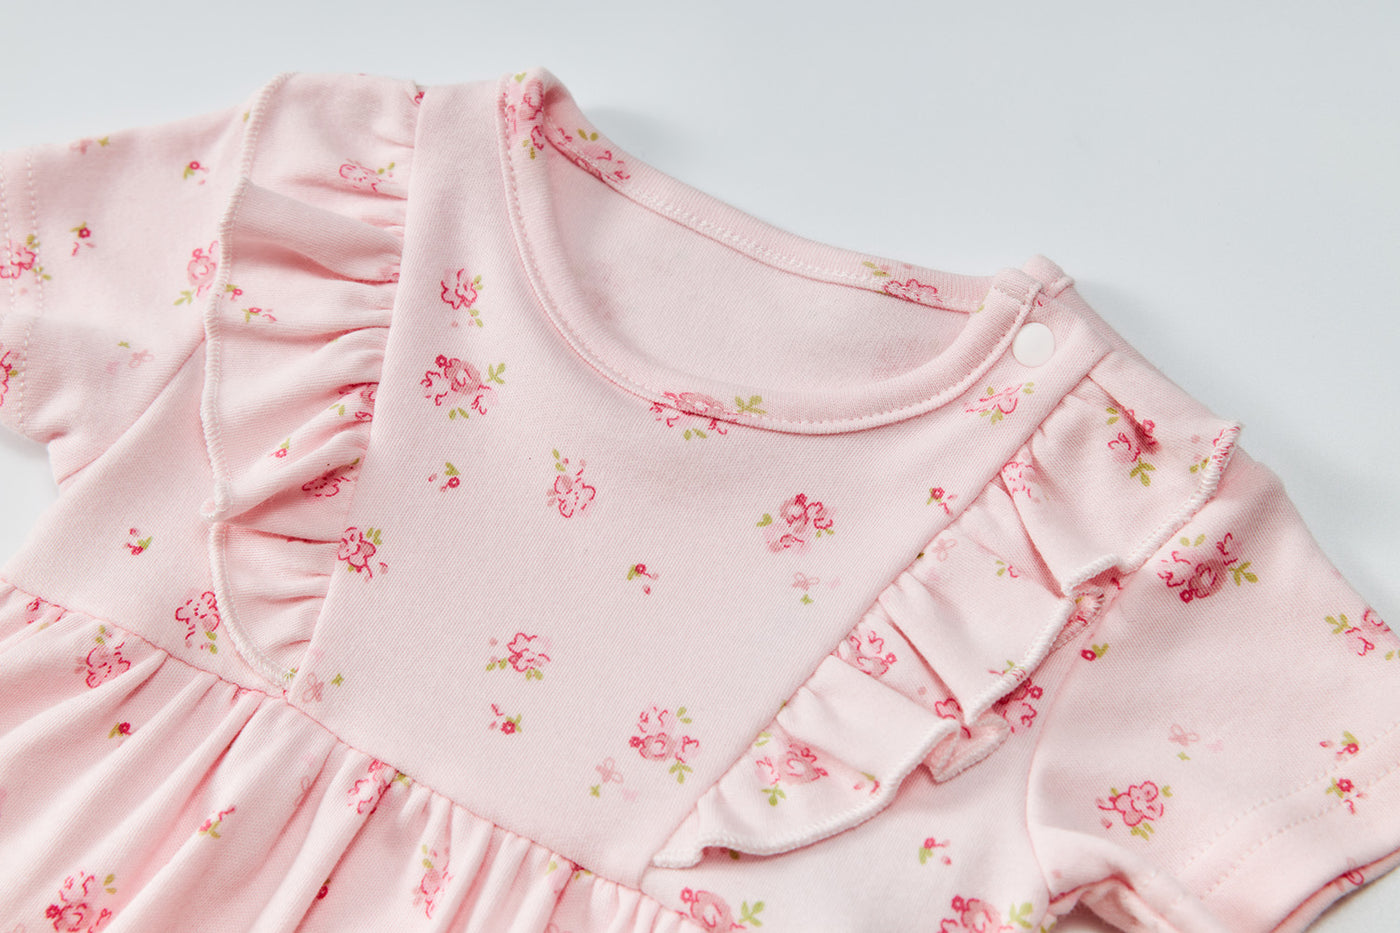 Baby Girl Short Sleeves Ruffled Bodysuit Dress Pink w Roses - Little Kooma